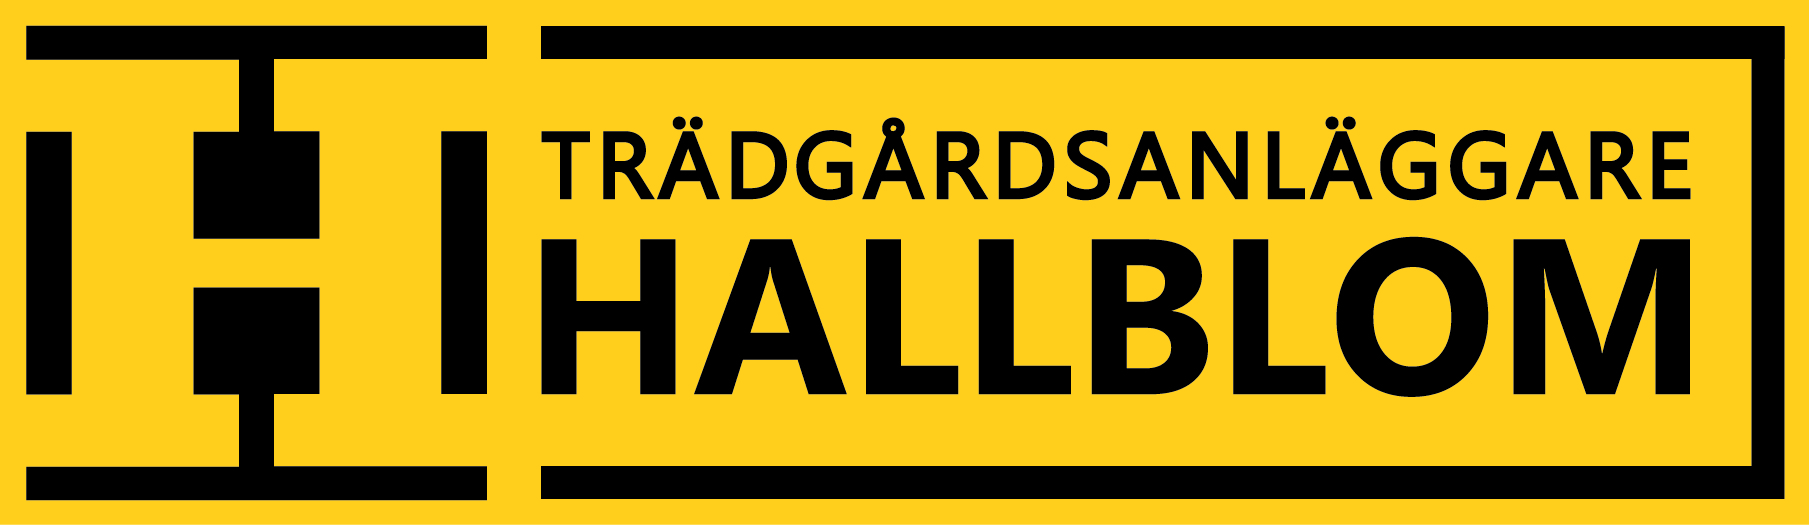 Trädgårdsanläggare Hallblom logotyp